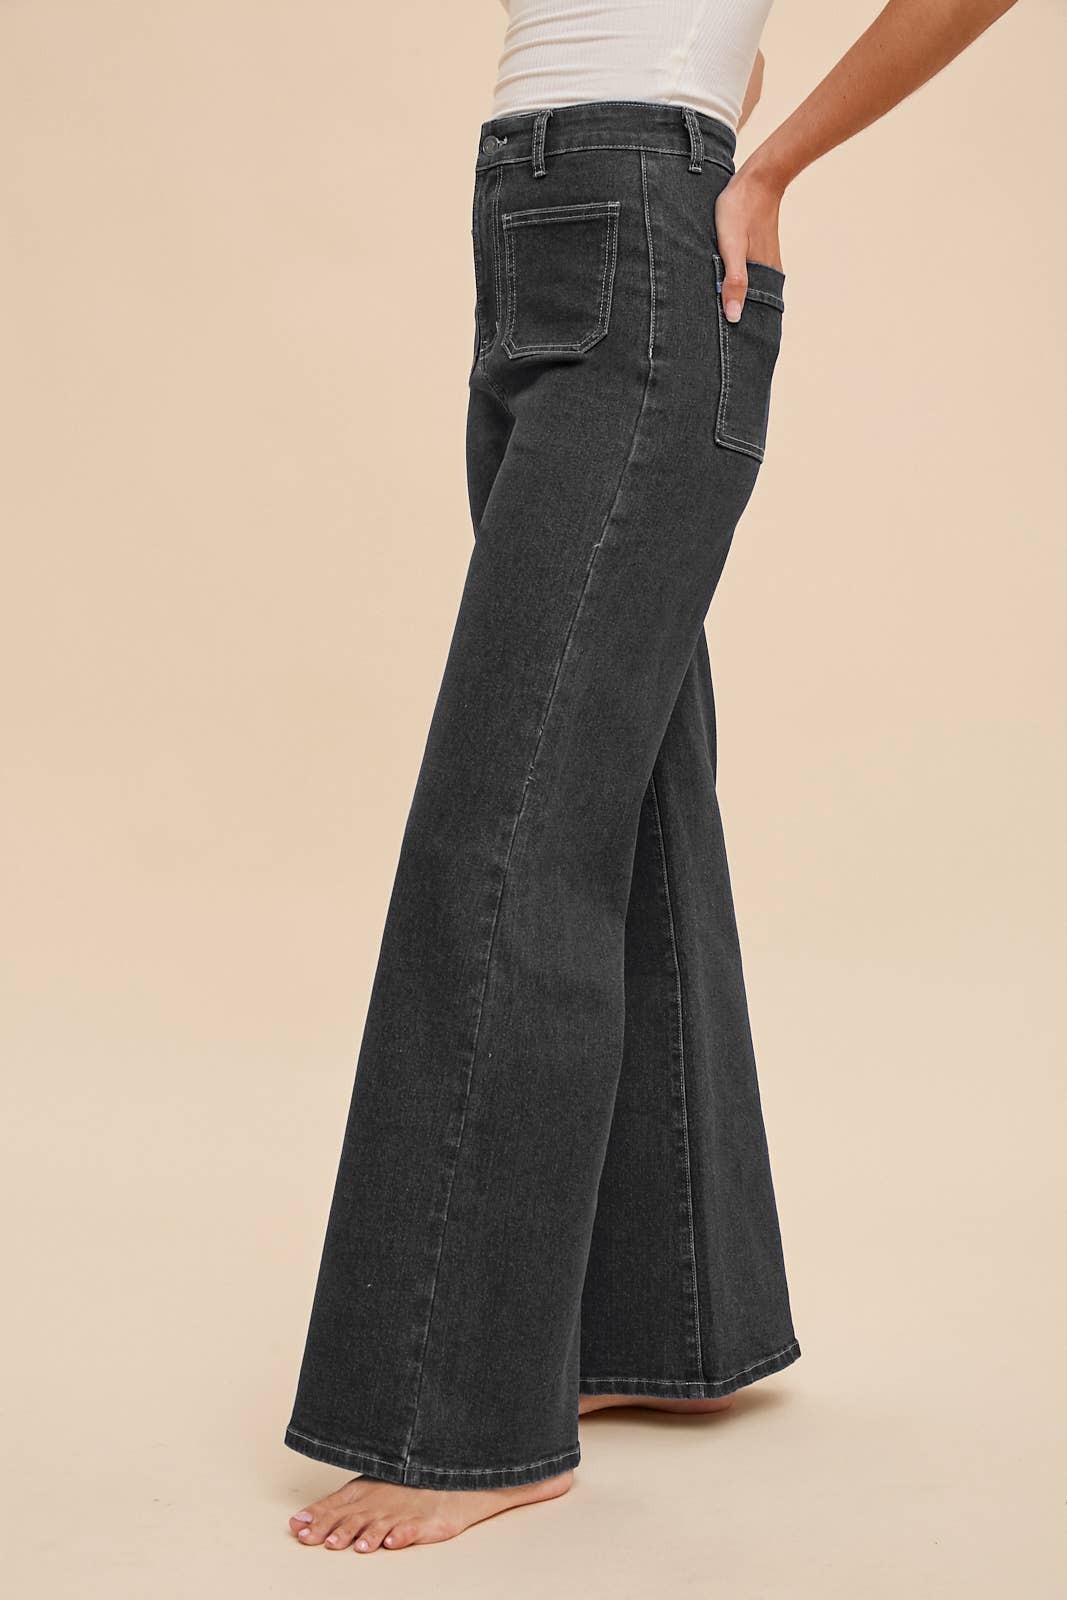 Front Two Pocket Stretch Wide Leg Denim Jeans - Modish Maven Boutique